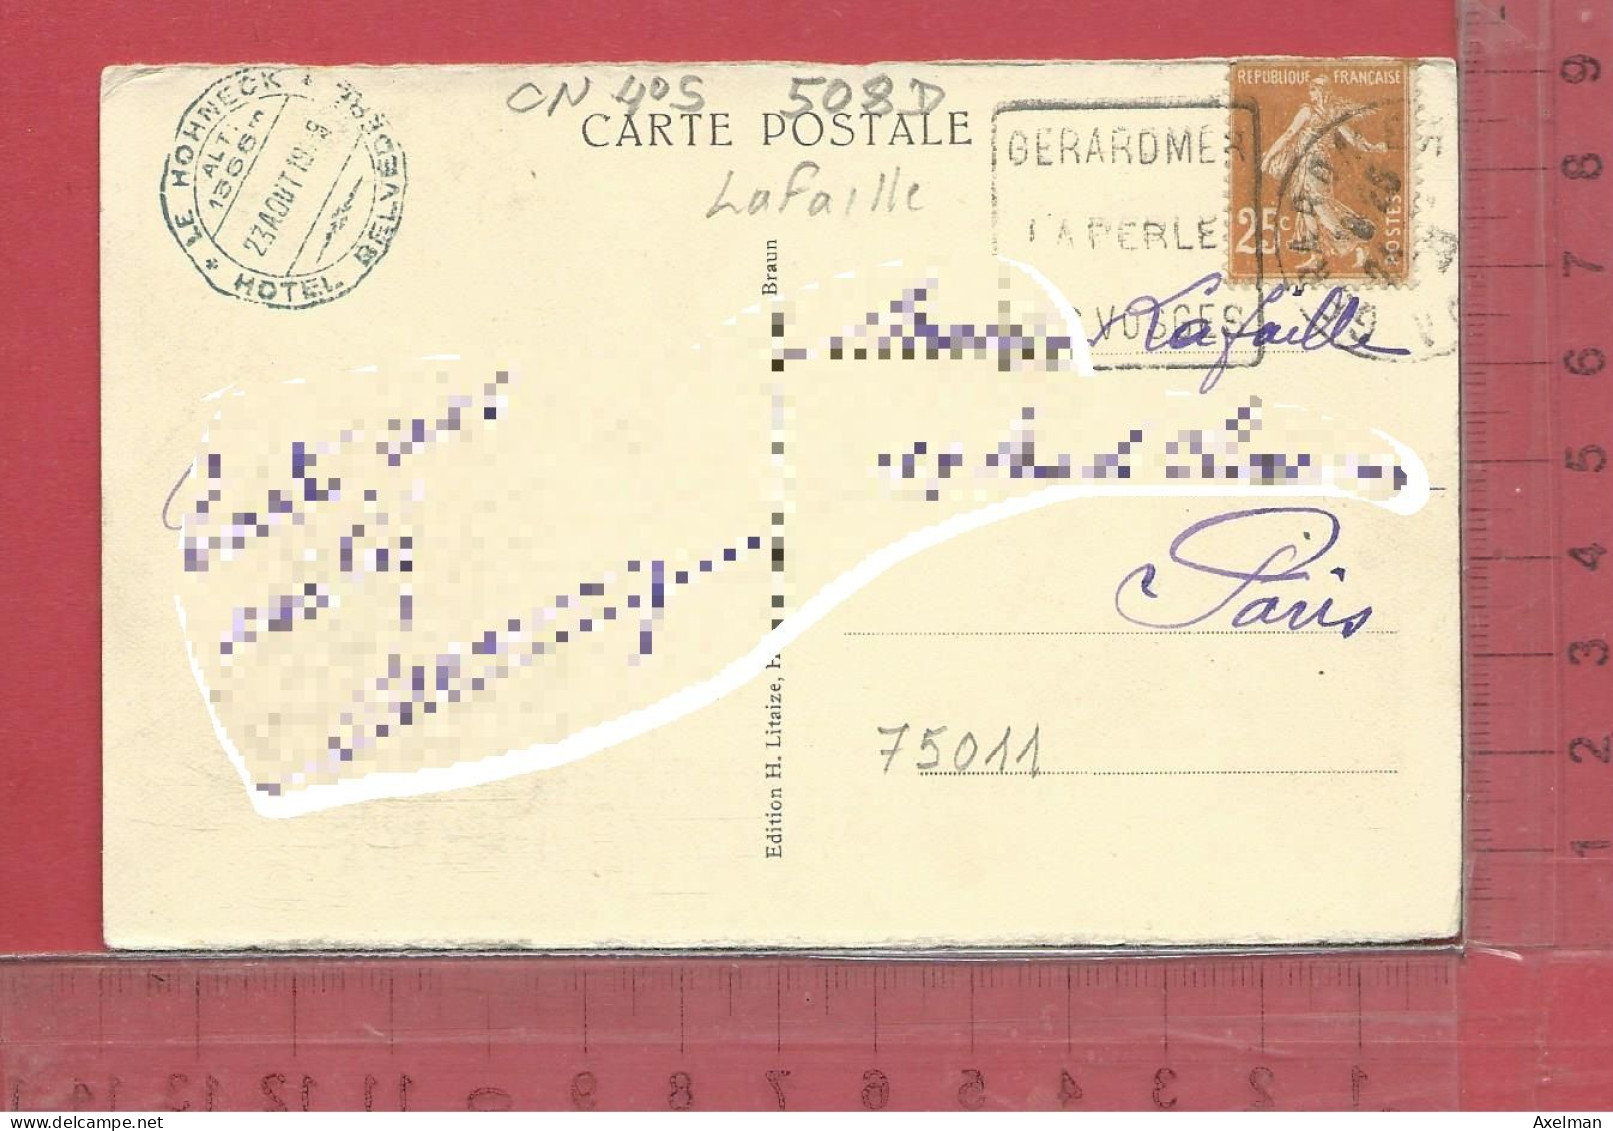 CARTE NOMINATIVE :  LAFAILLE  à  75011  Paris - Genealogy